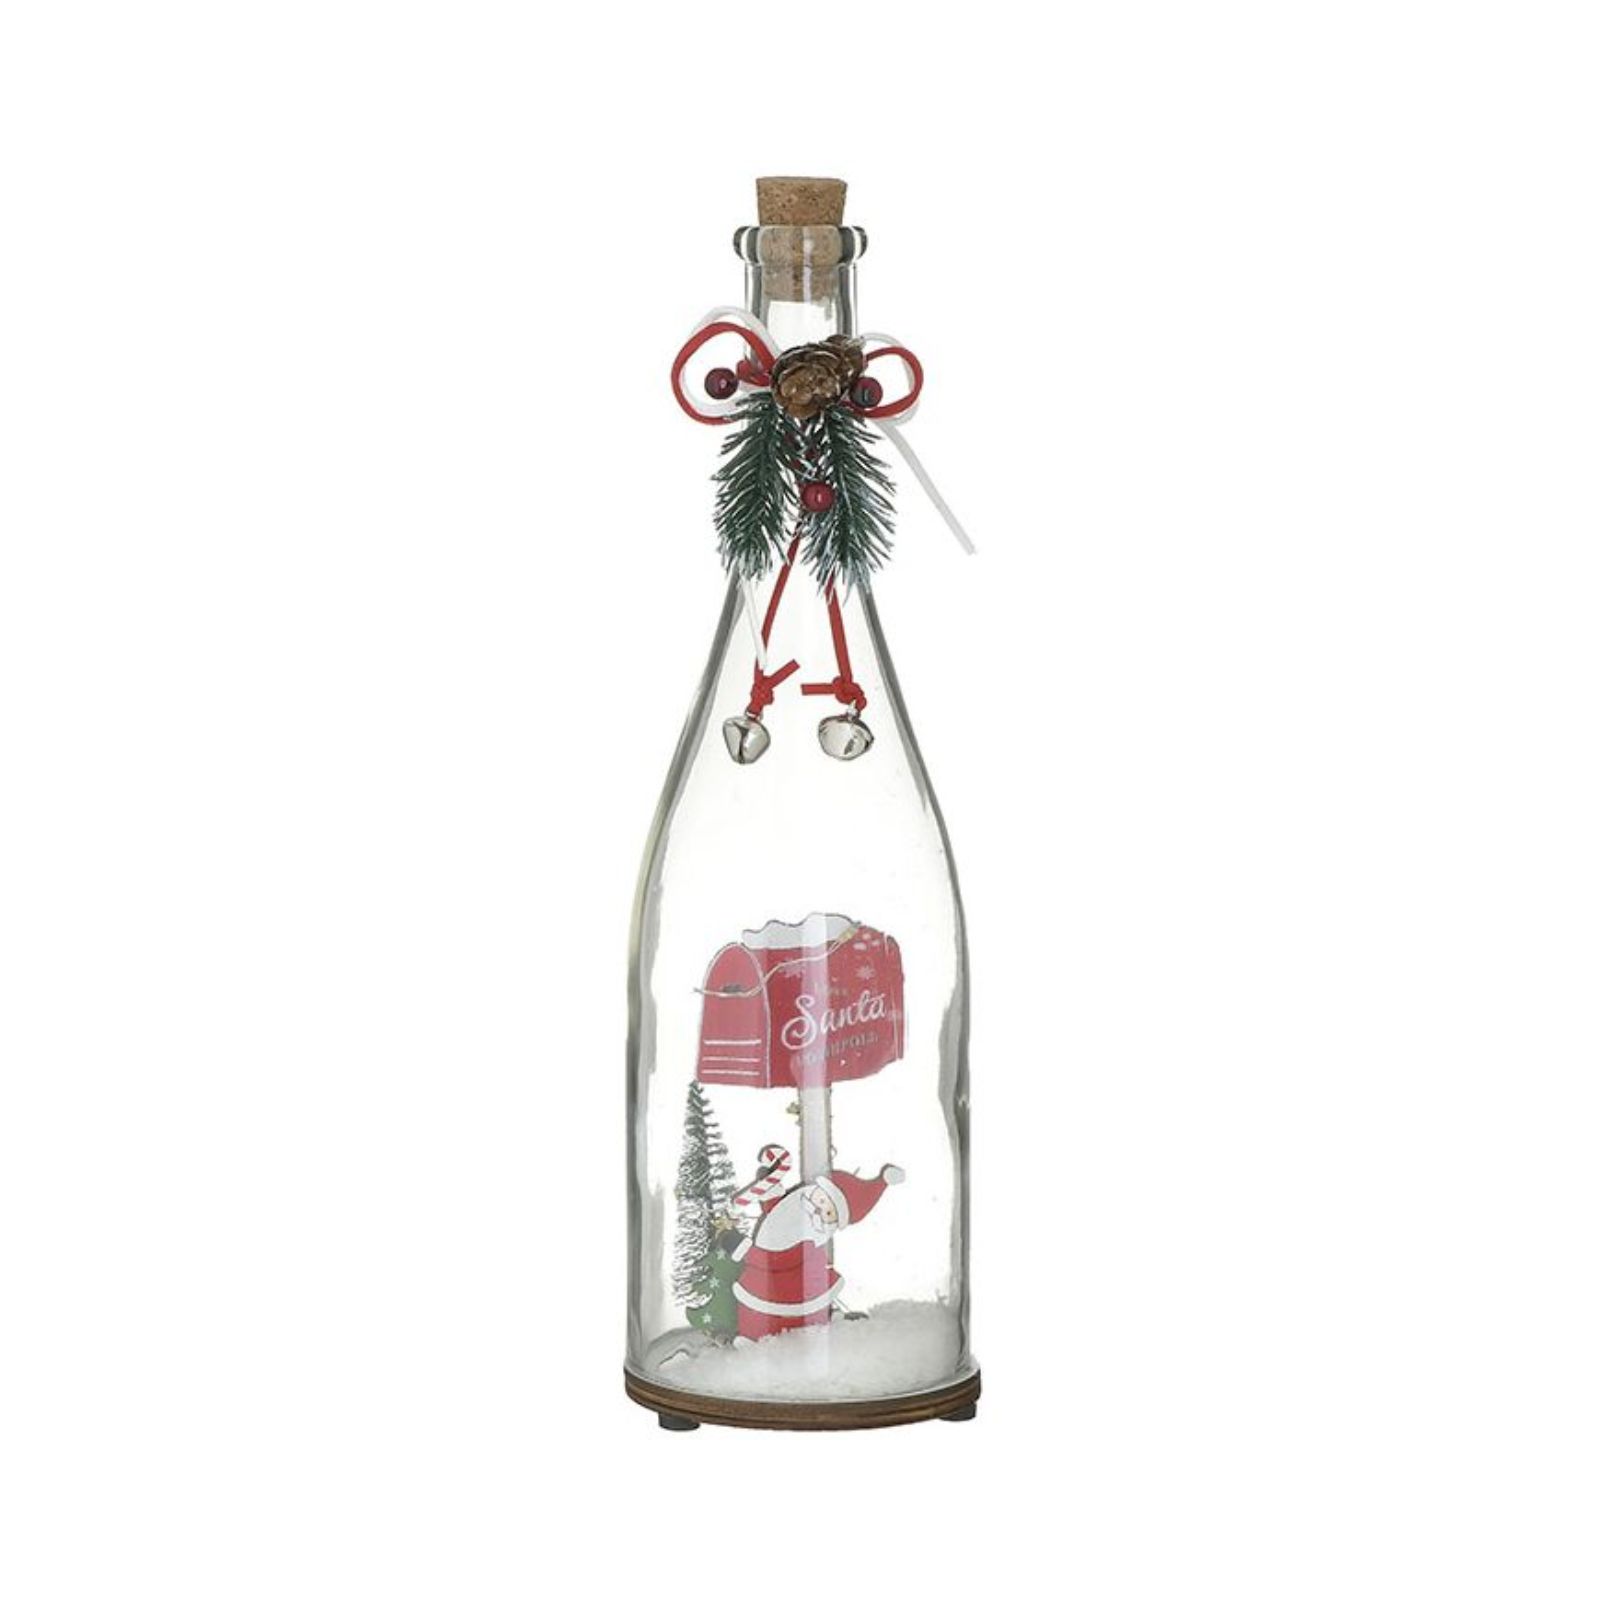 Decoratiuni de Craciun - Decoratiune Craciun din sticla, cu led, Bottle 30 cm Inart, hectarul.ro